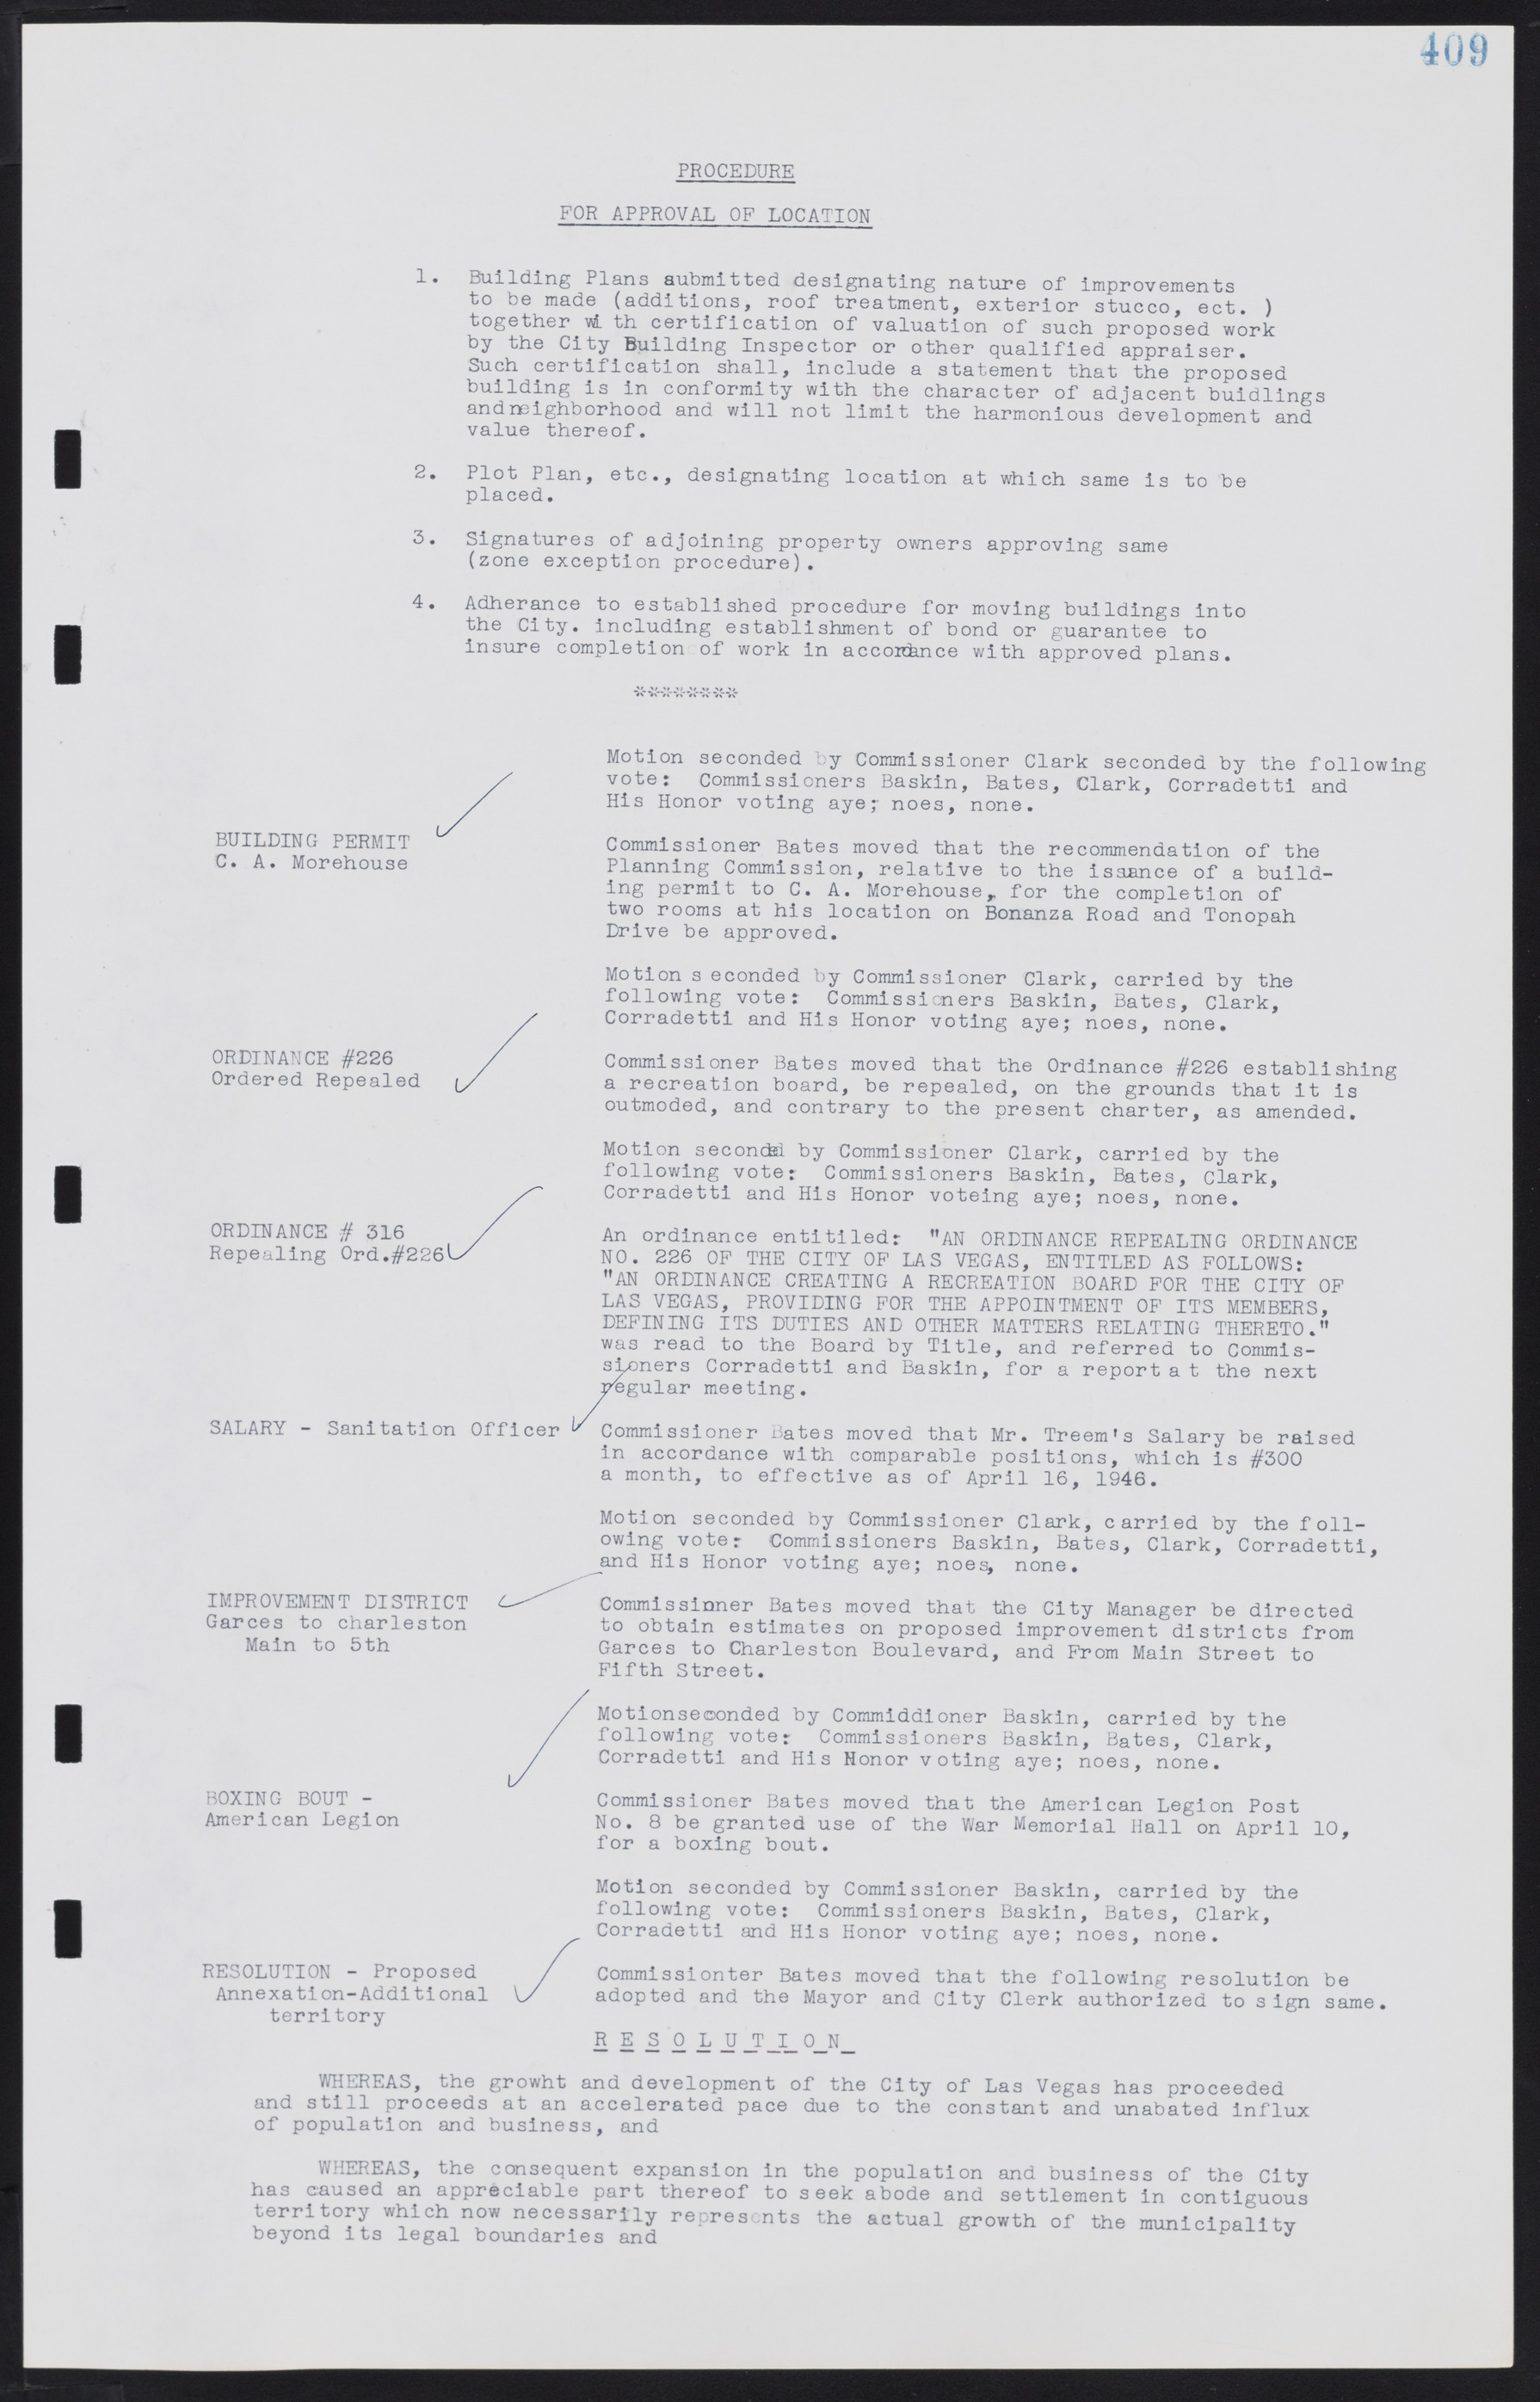 Las Vegas City Commission Minutes, August 11, 1942 to December 30, 1946, lvc000005-437